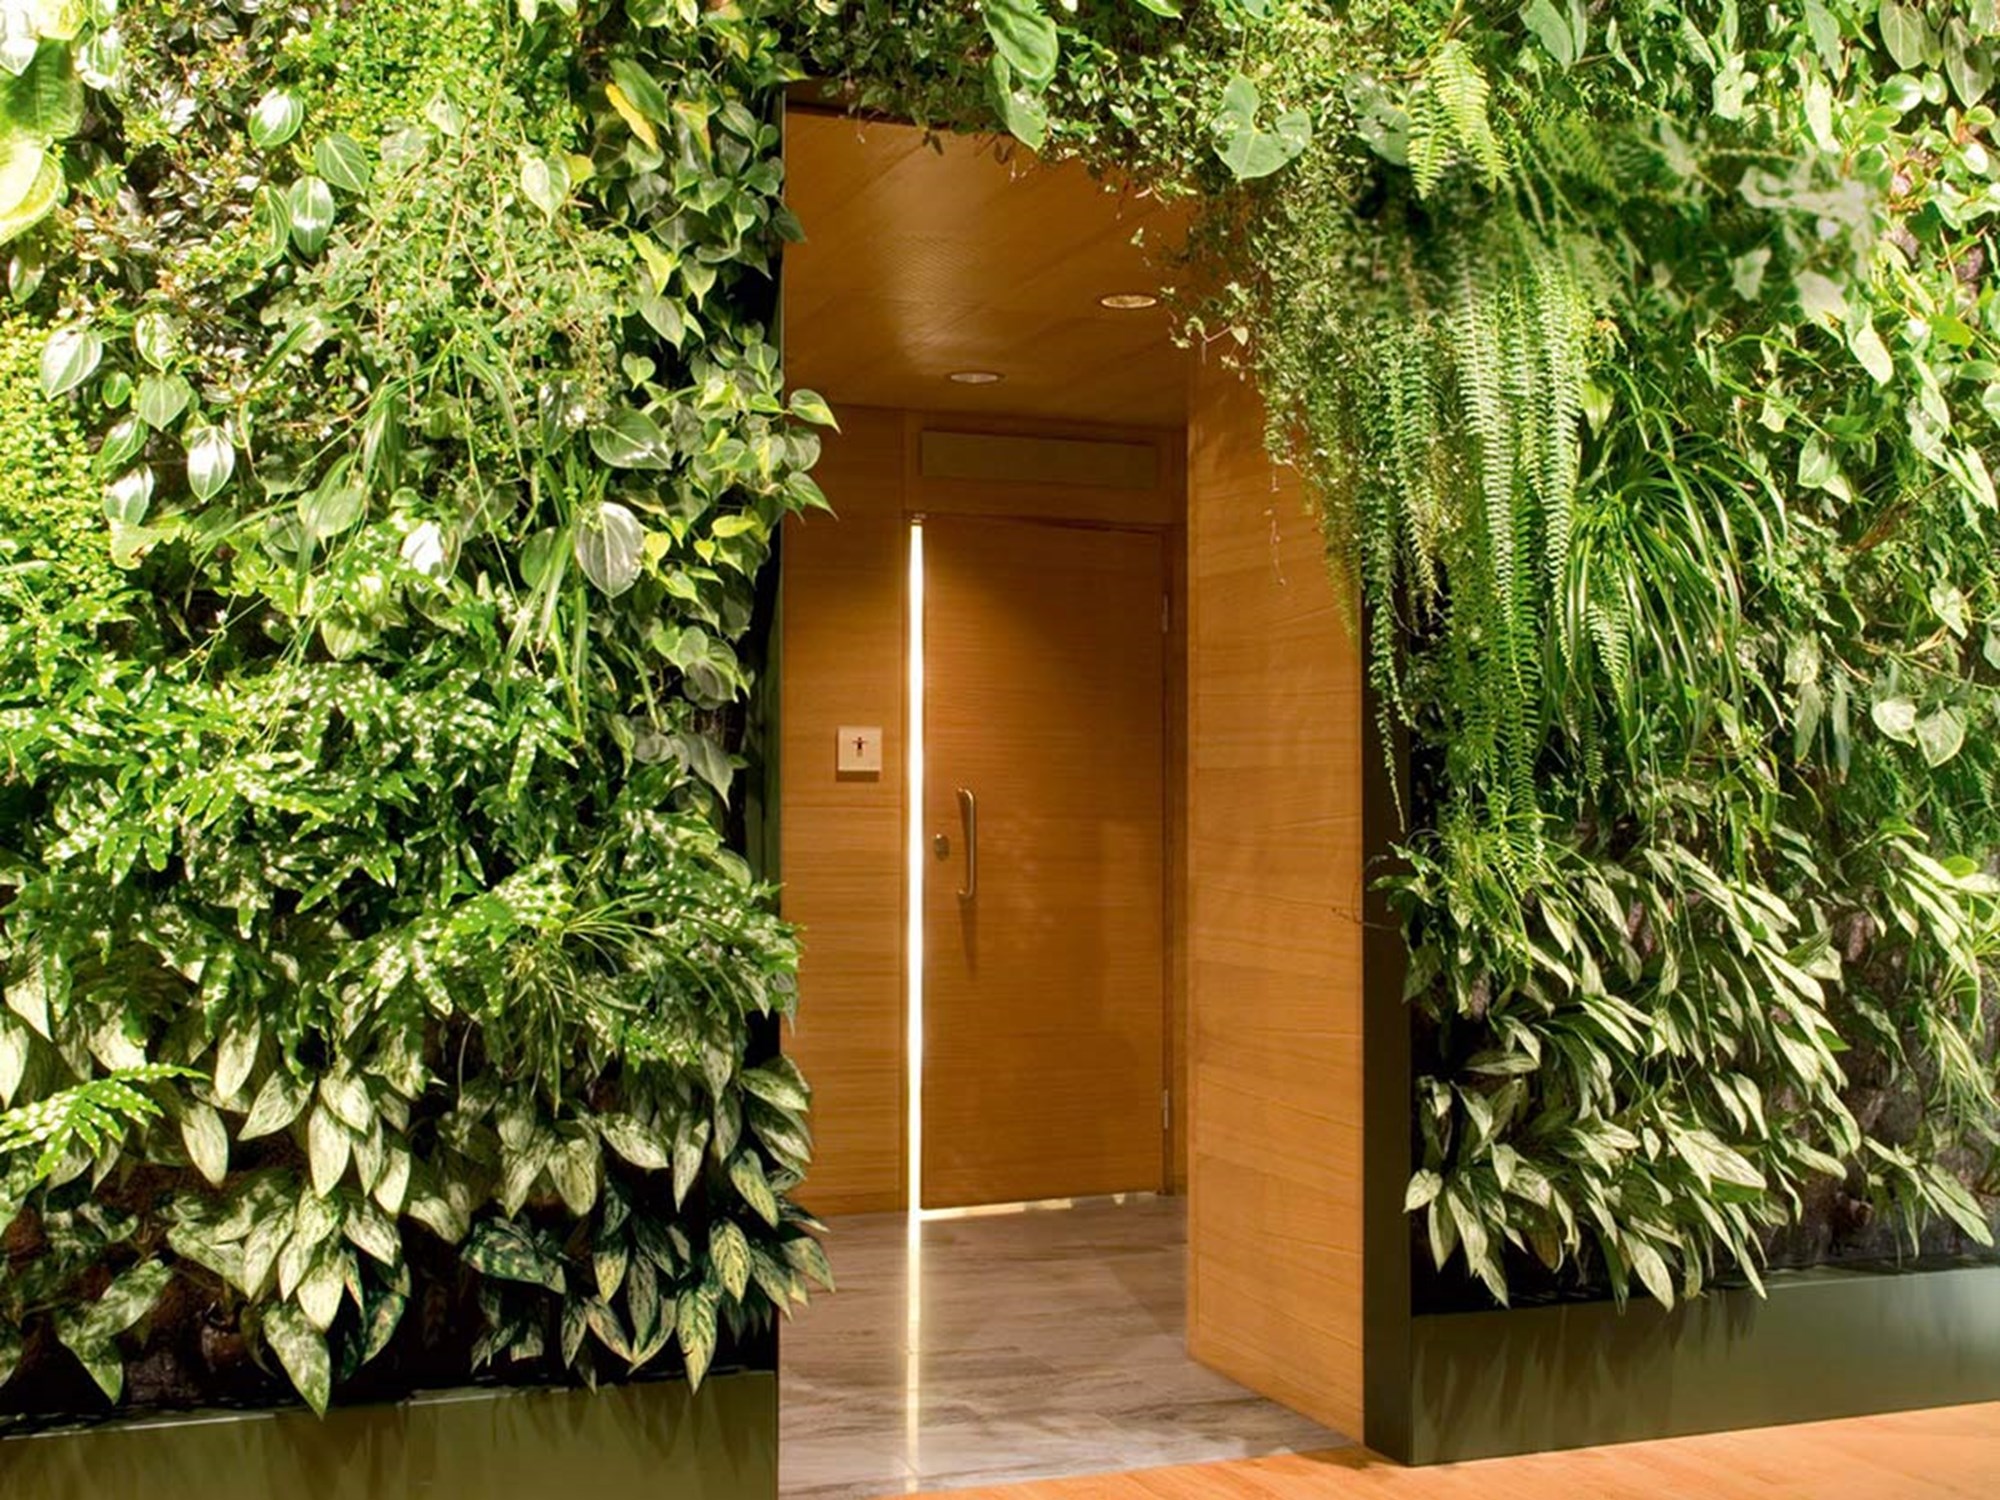 Toalettdörr i Talk Hotell växter på väggarna